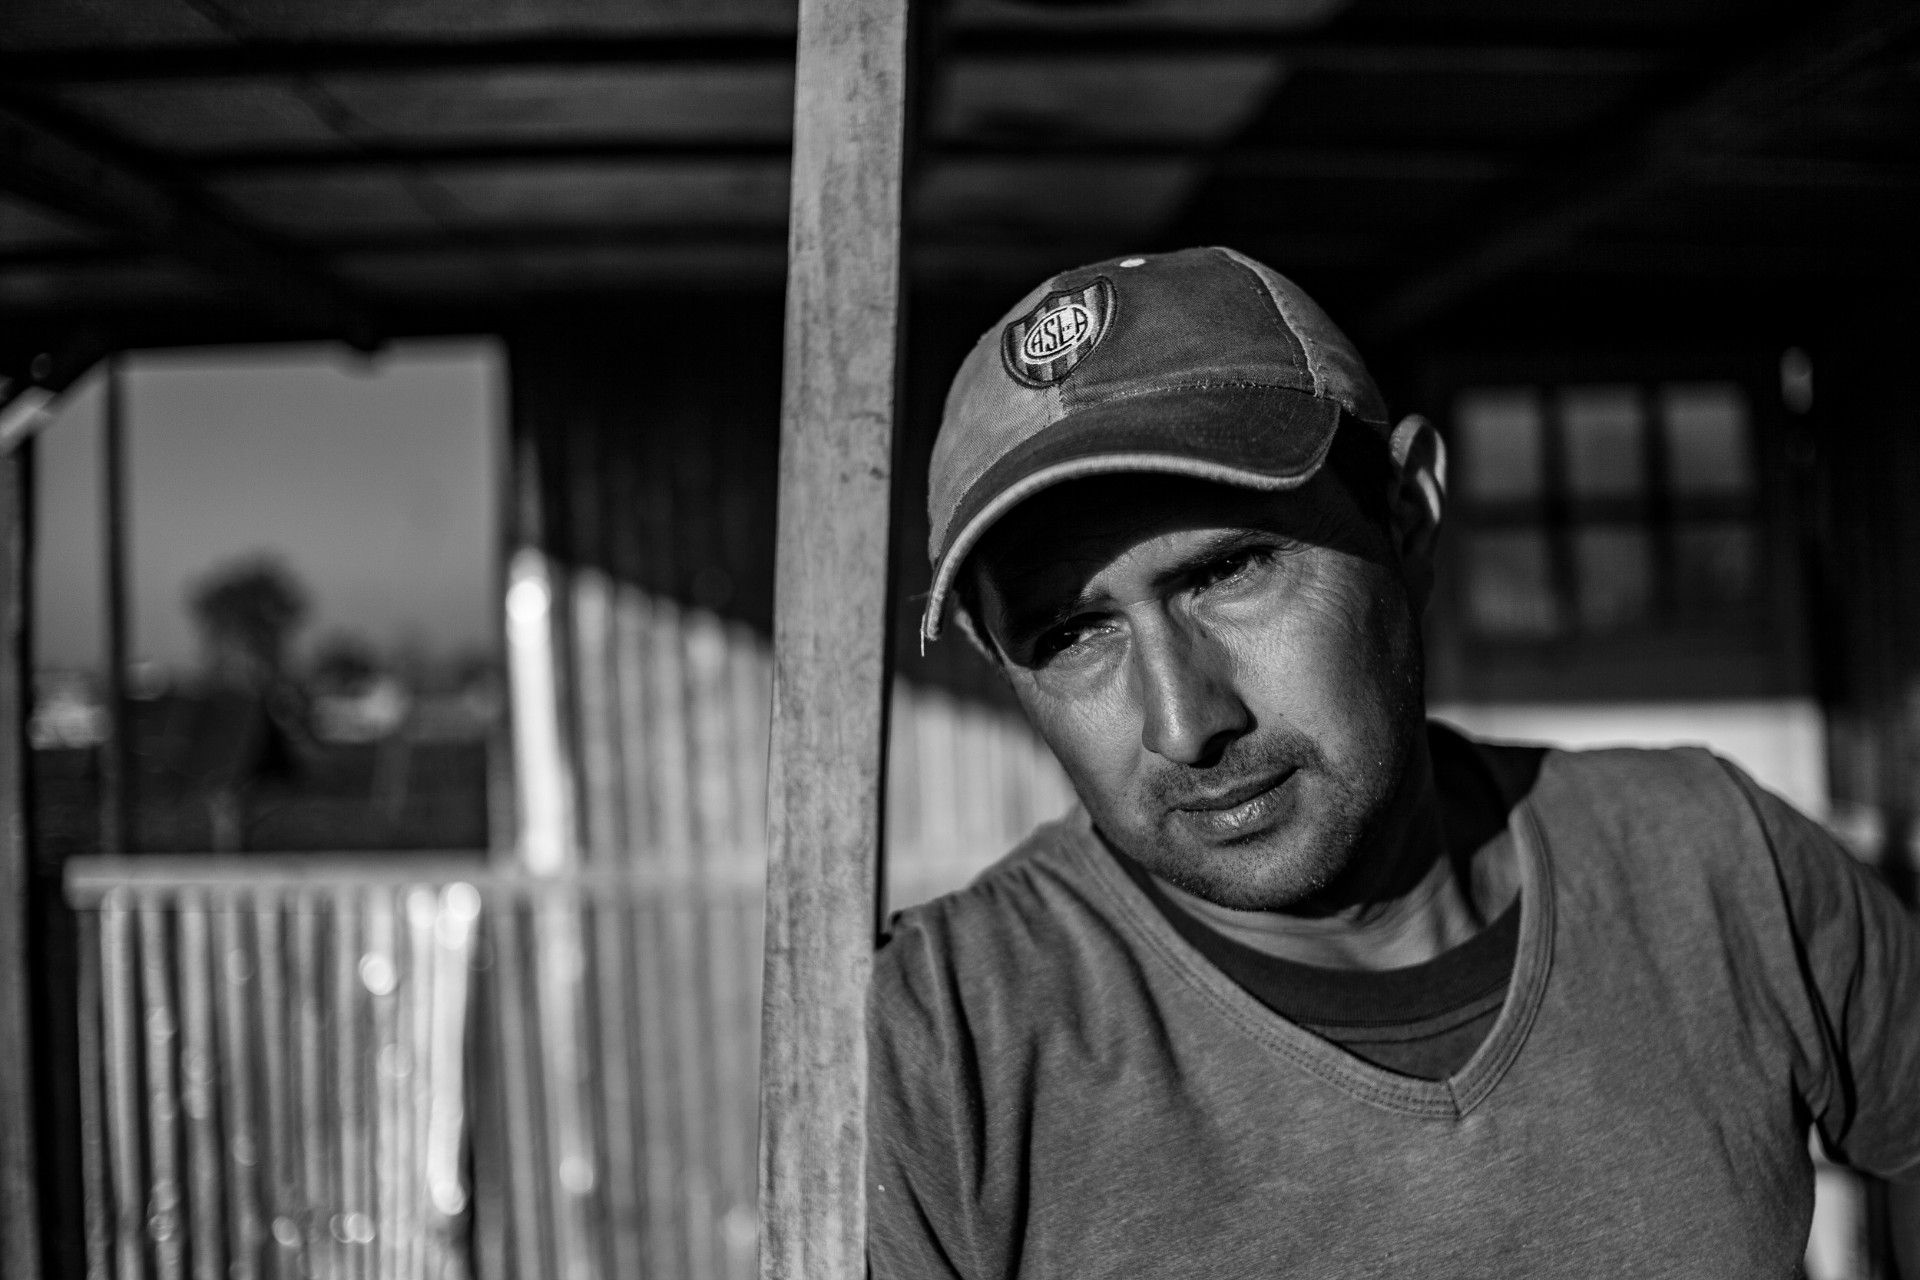 Luis Alberto Avalos, 40 años. Albañil, carpintero y pintor. Tiene a su familia en Paraguay y no pudo seguir alquilando. 